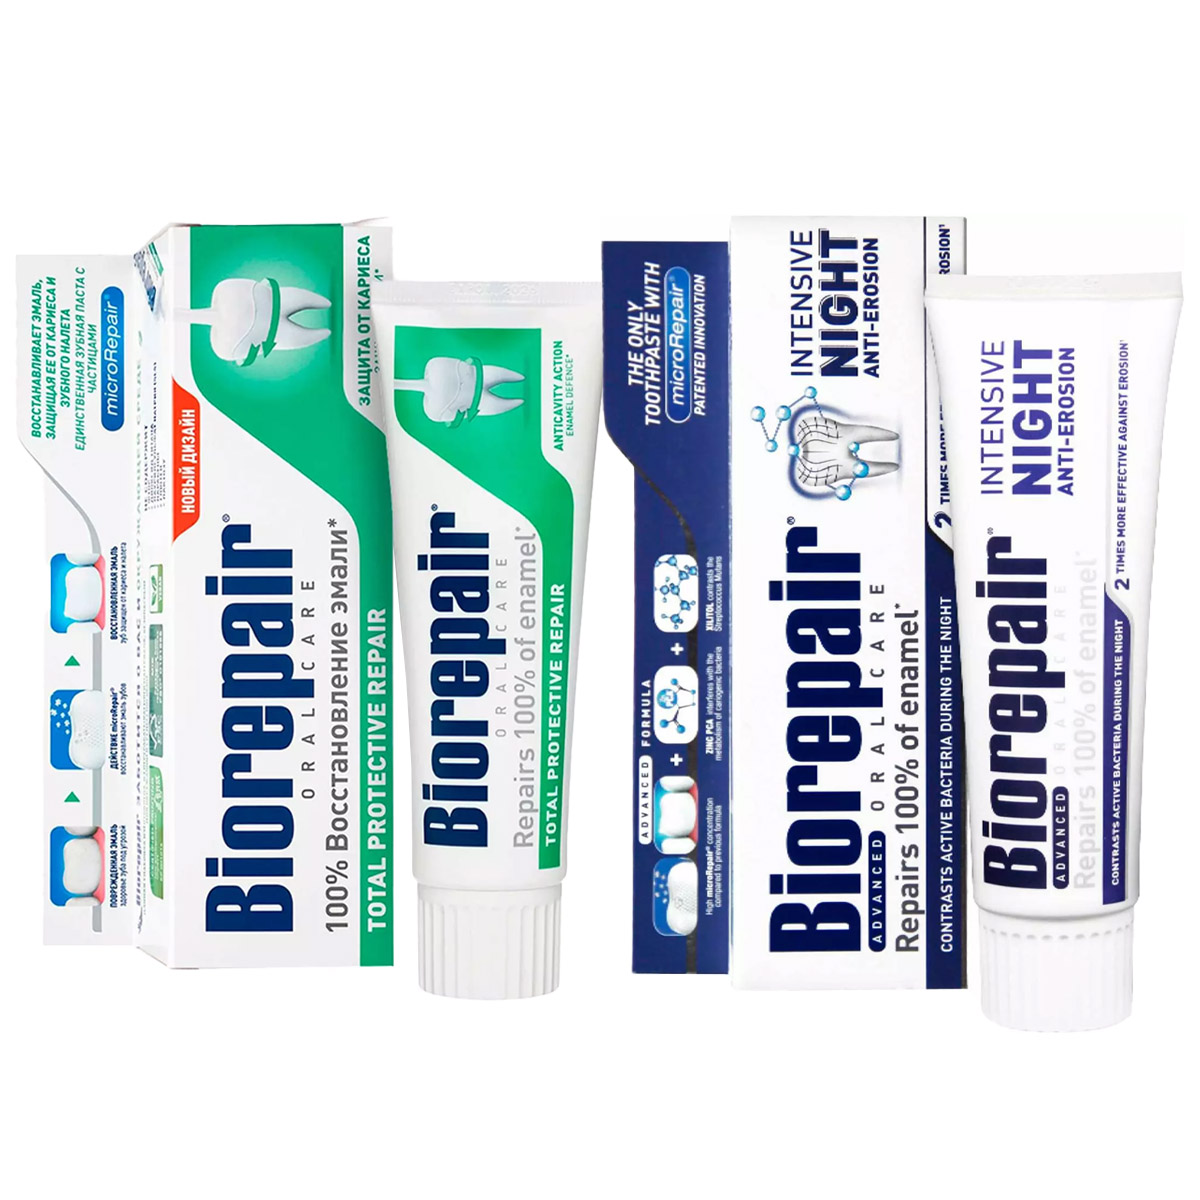 Biorepair Набор зубных паст для комплексного ухода за полостью рта, 2х75 мл (Biorepair, Ежедневная забота) цена и фото